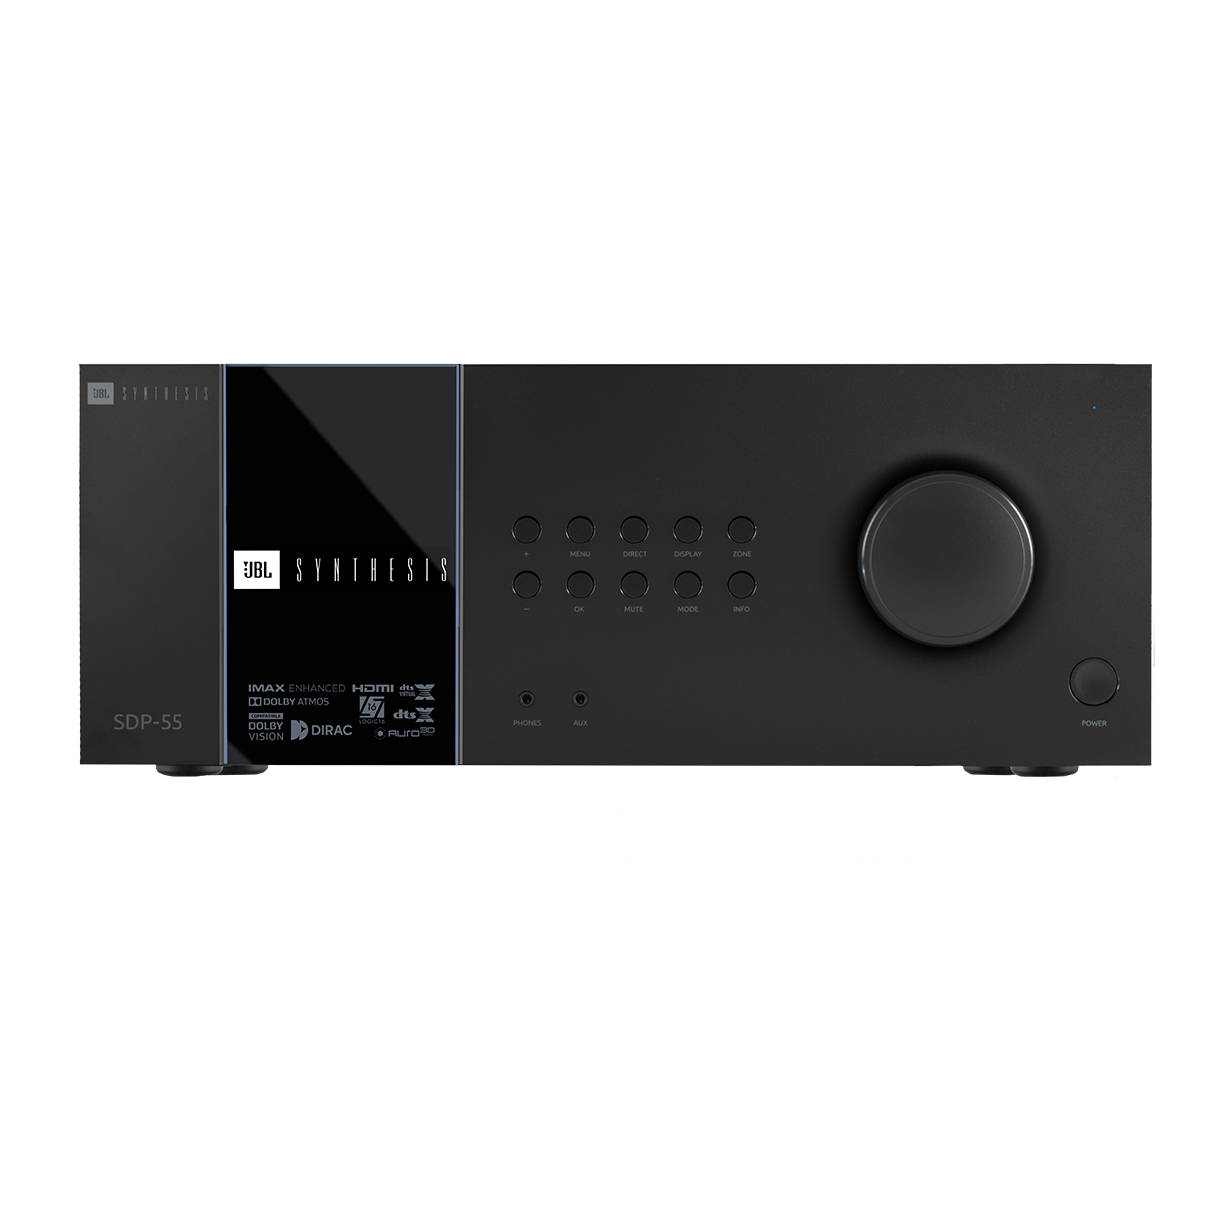 SDP-55 - Black - 16 Ch. Immersive Surround Sound Processor with Dante - Hero